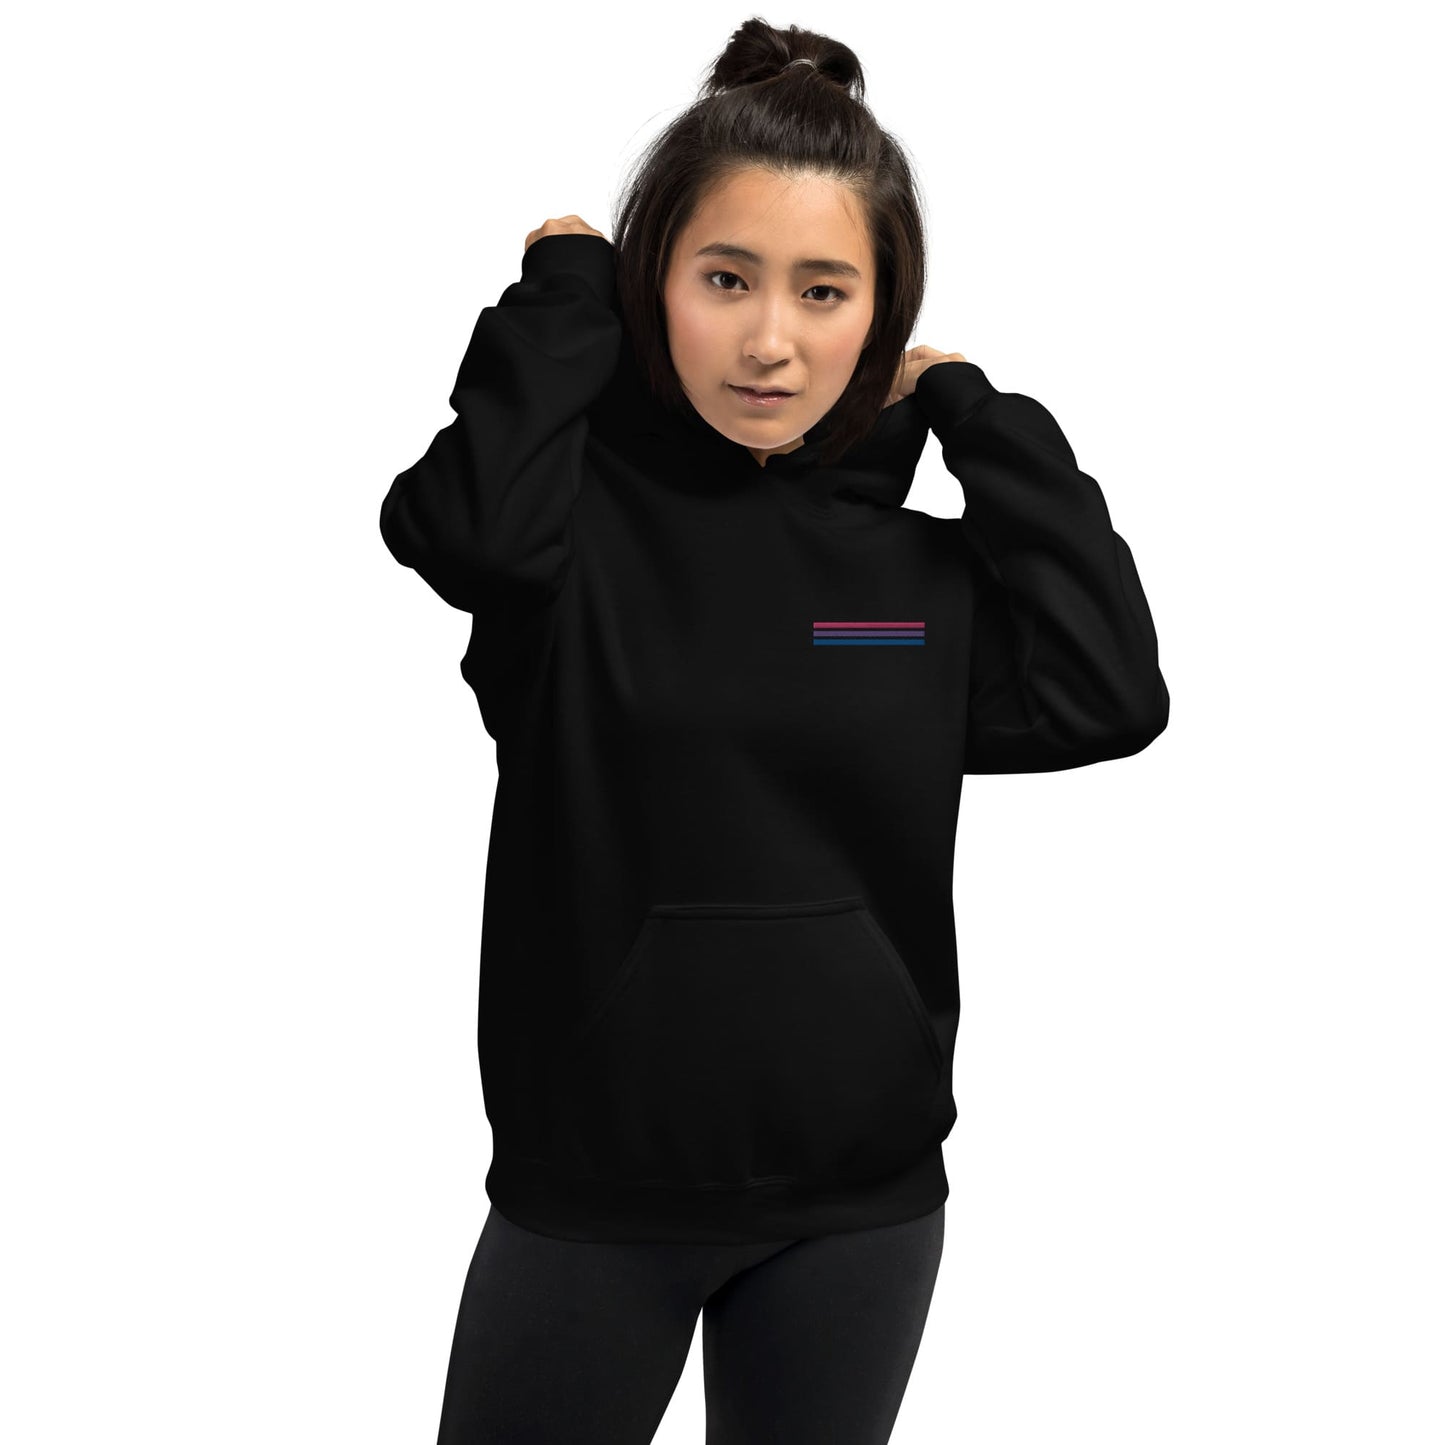 bisexual hoodie, subtle bi pride flag embroidered pocket design hooded sweatshirt, model 1